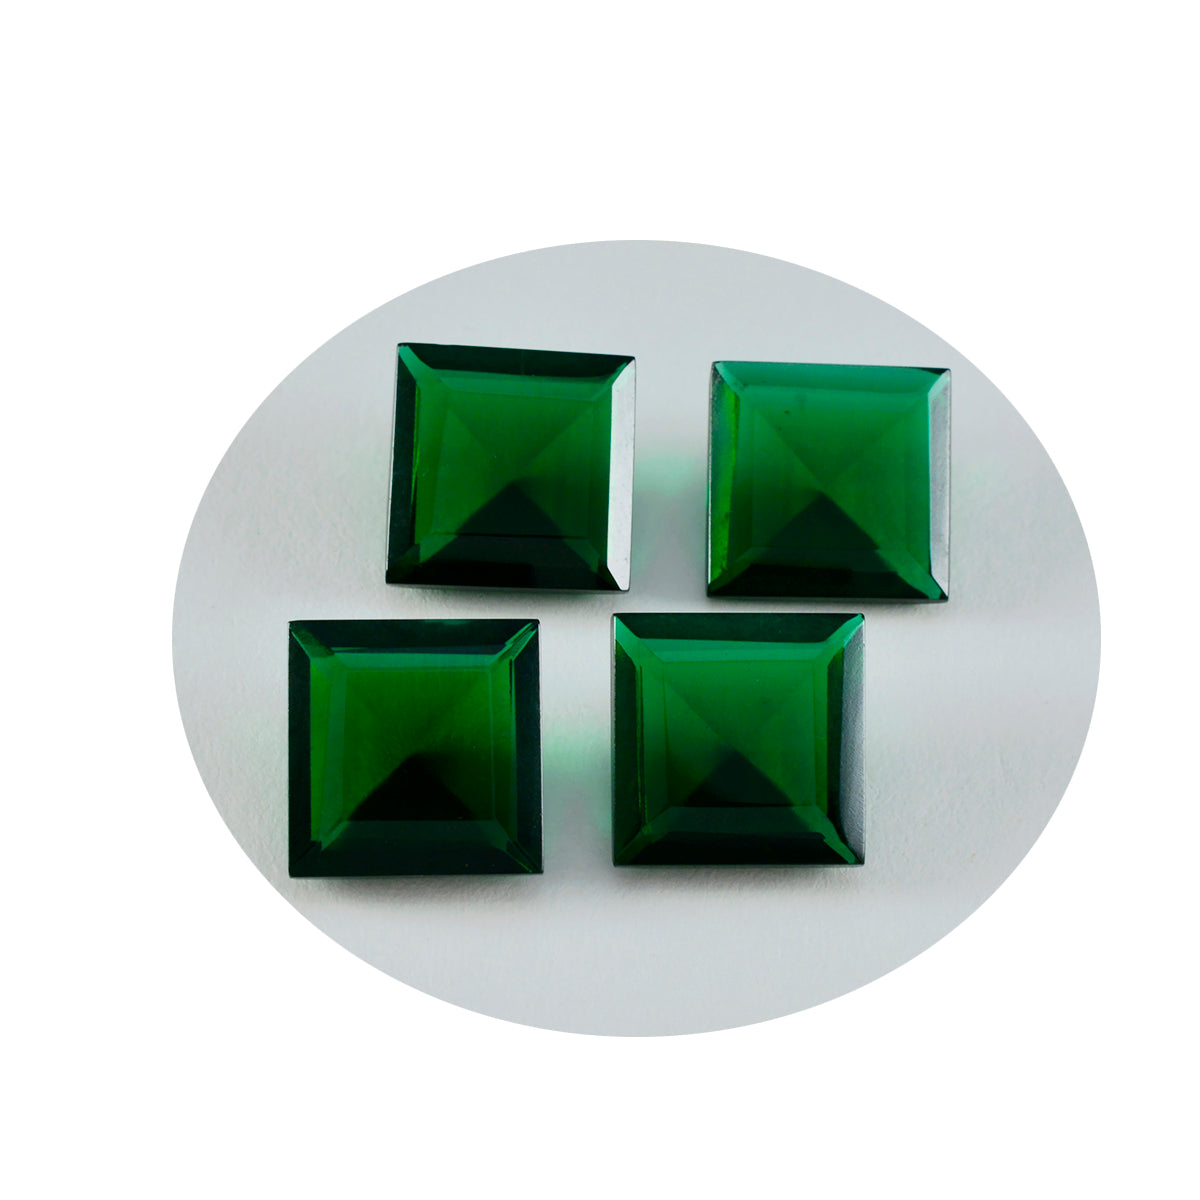 riyogems 1 шт. зеленый изумруд cz ограненный 15x15 мм квадратной формы драгоценный камень прекрасного качества